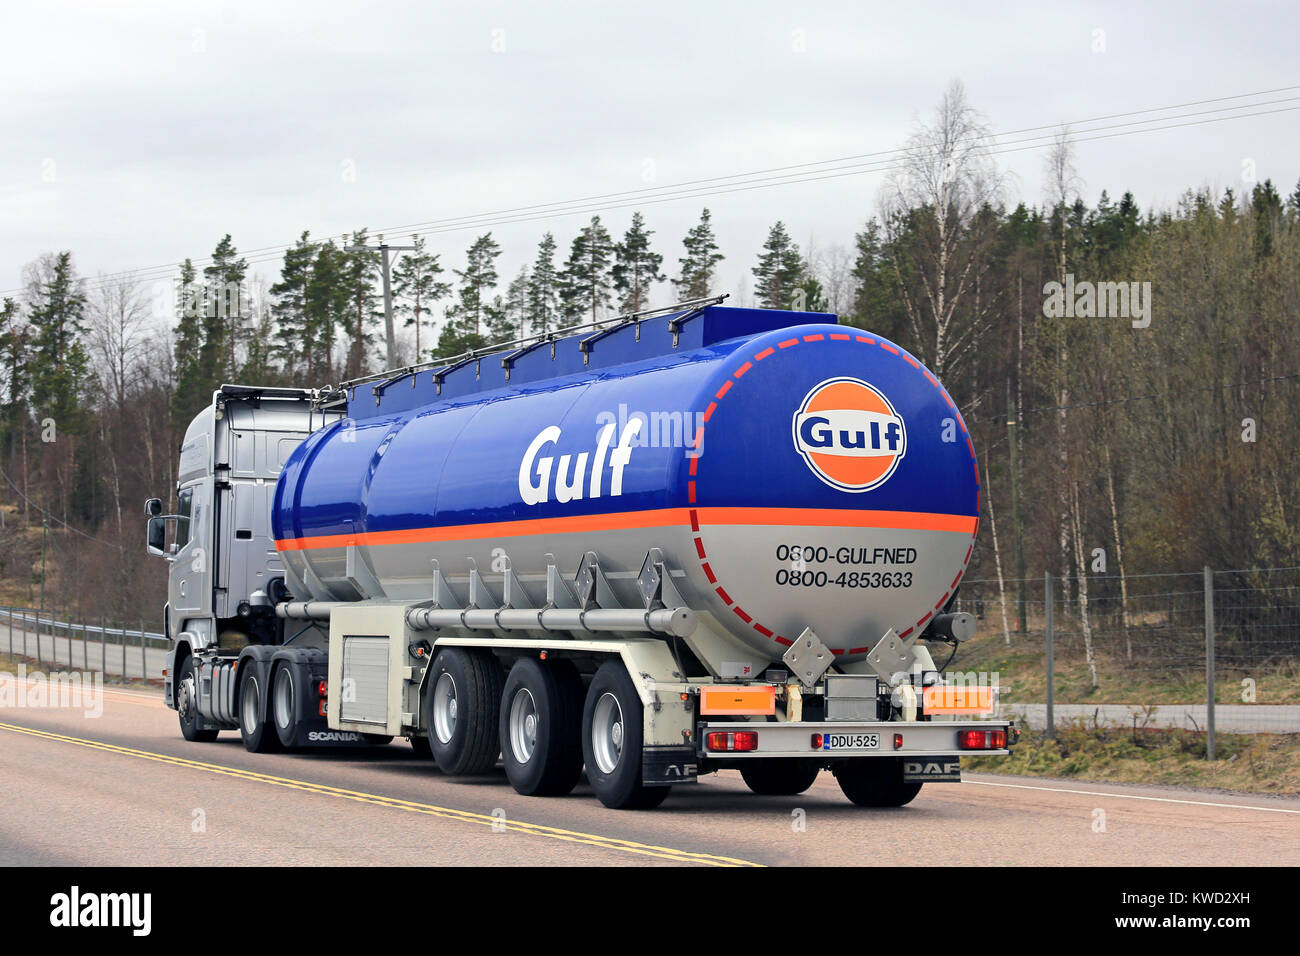 ORIVESI, Finlandia - 17 Maggio 2017: Scania R560 Golfo Olio combustibile semi autobotte di M. Rautalin sulla strada in Finlandia centrale. Foto Stock